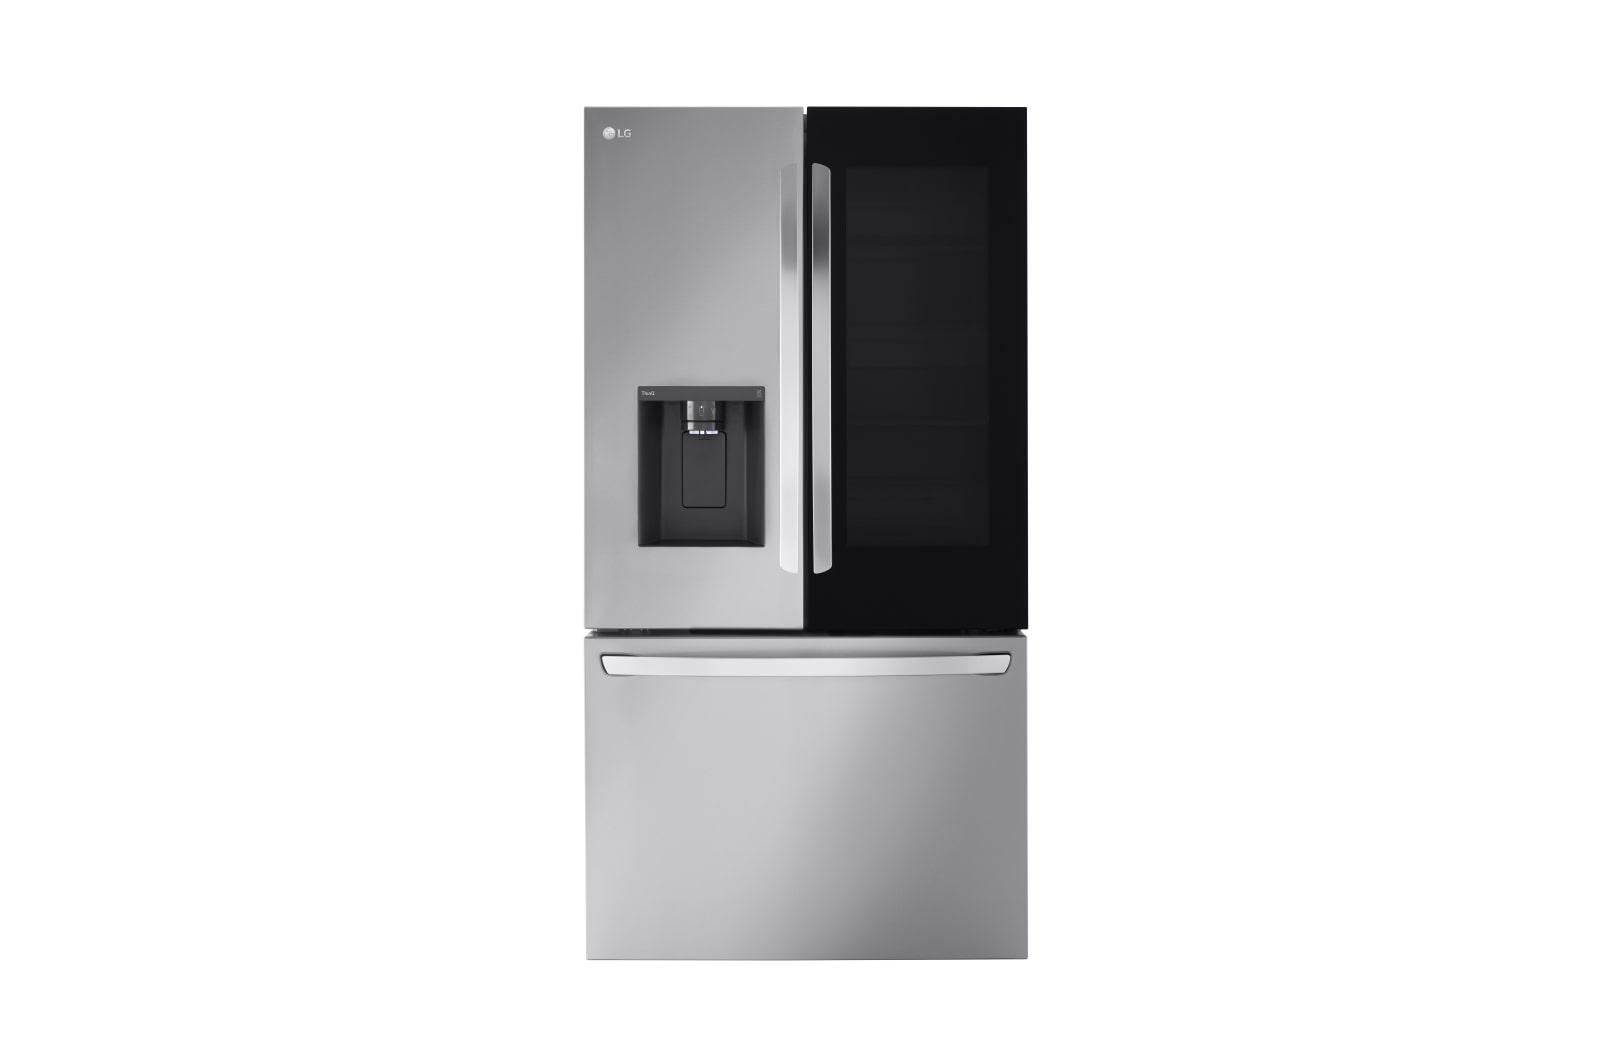 26 cu. ft. Smart InstaView® Counter-Depth Max French Door Refrigerator